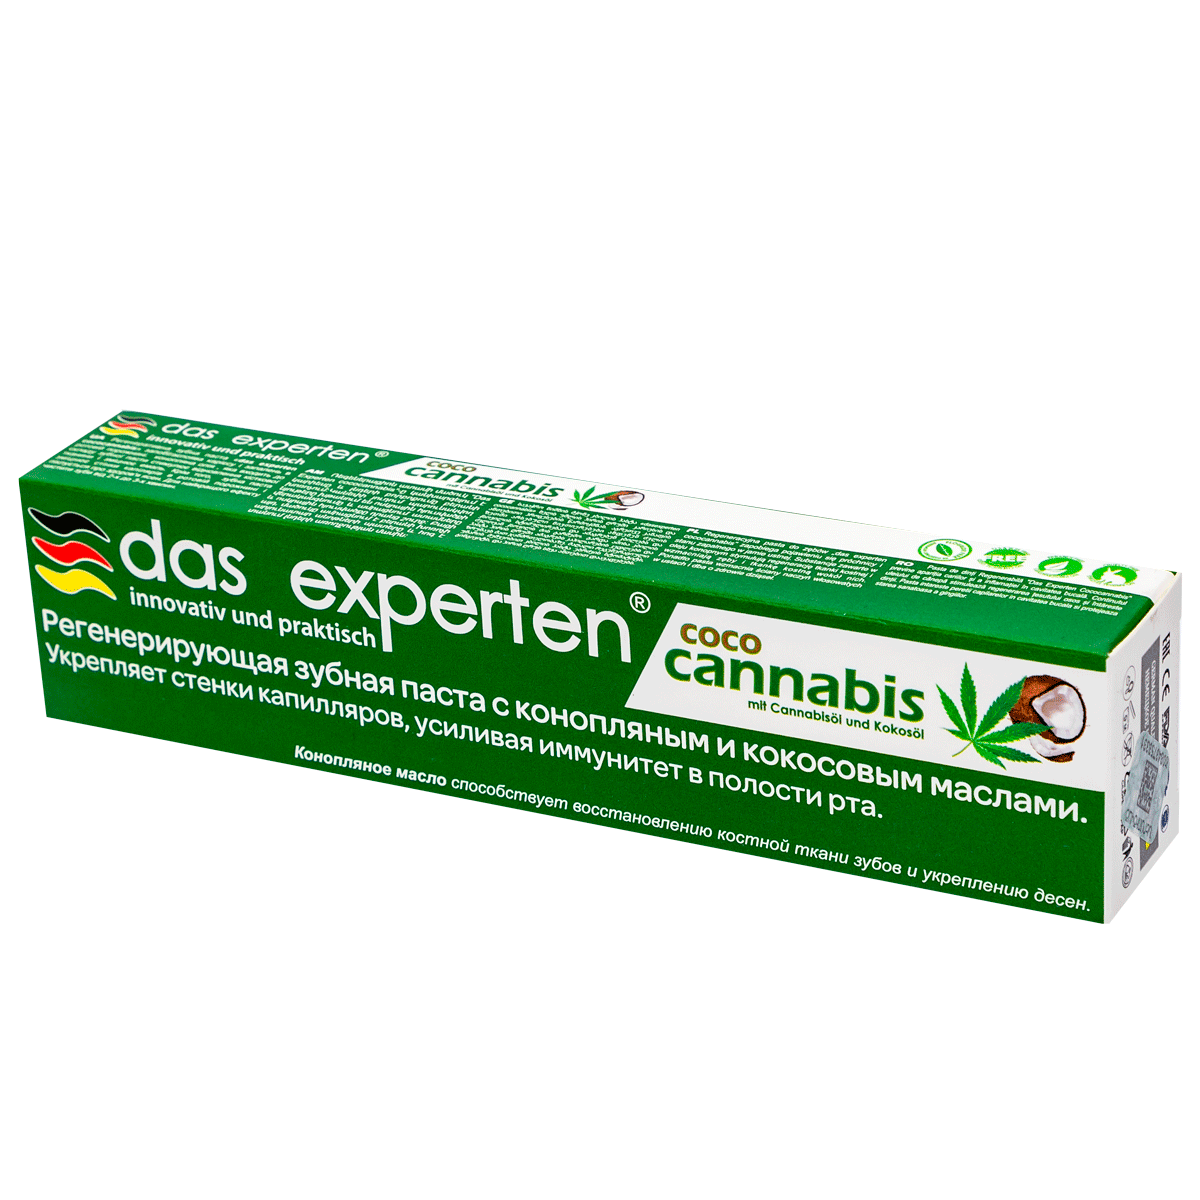 Зубная паста Das experten coco cannabis 